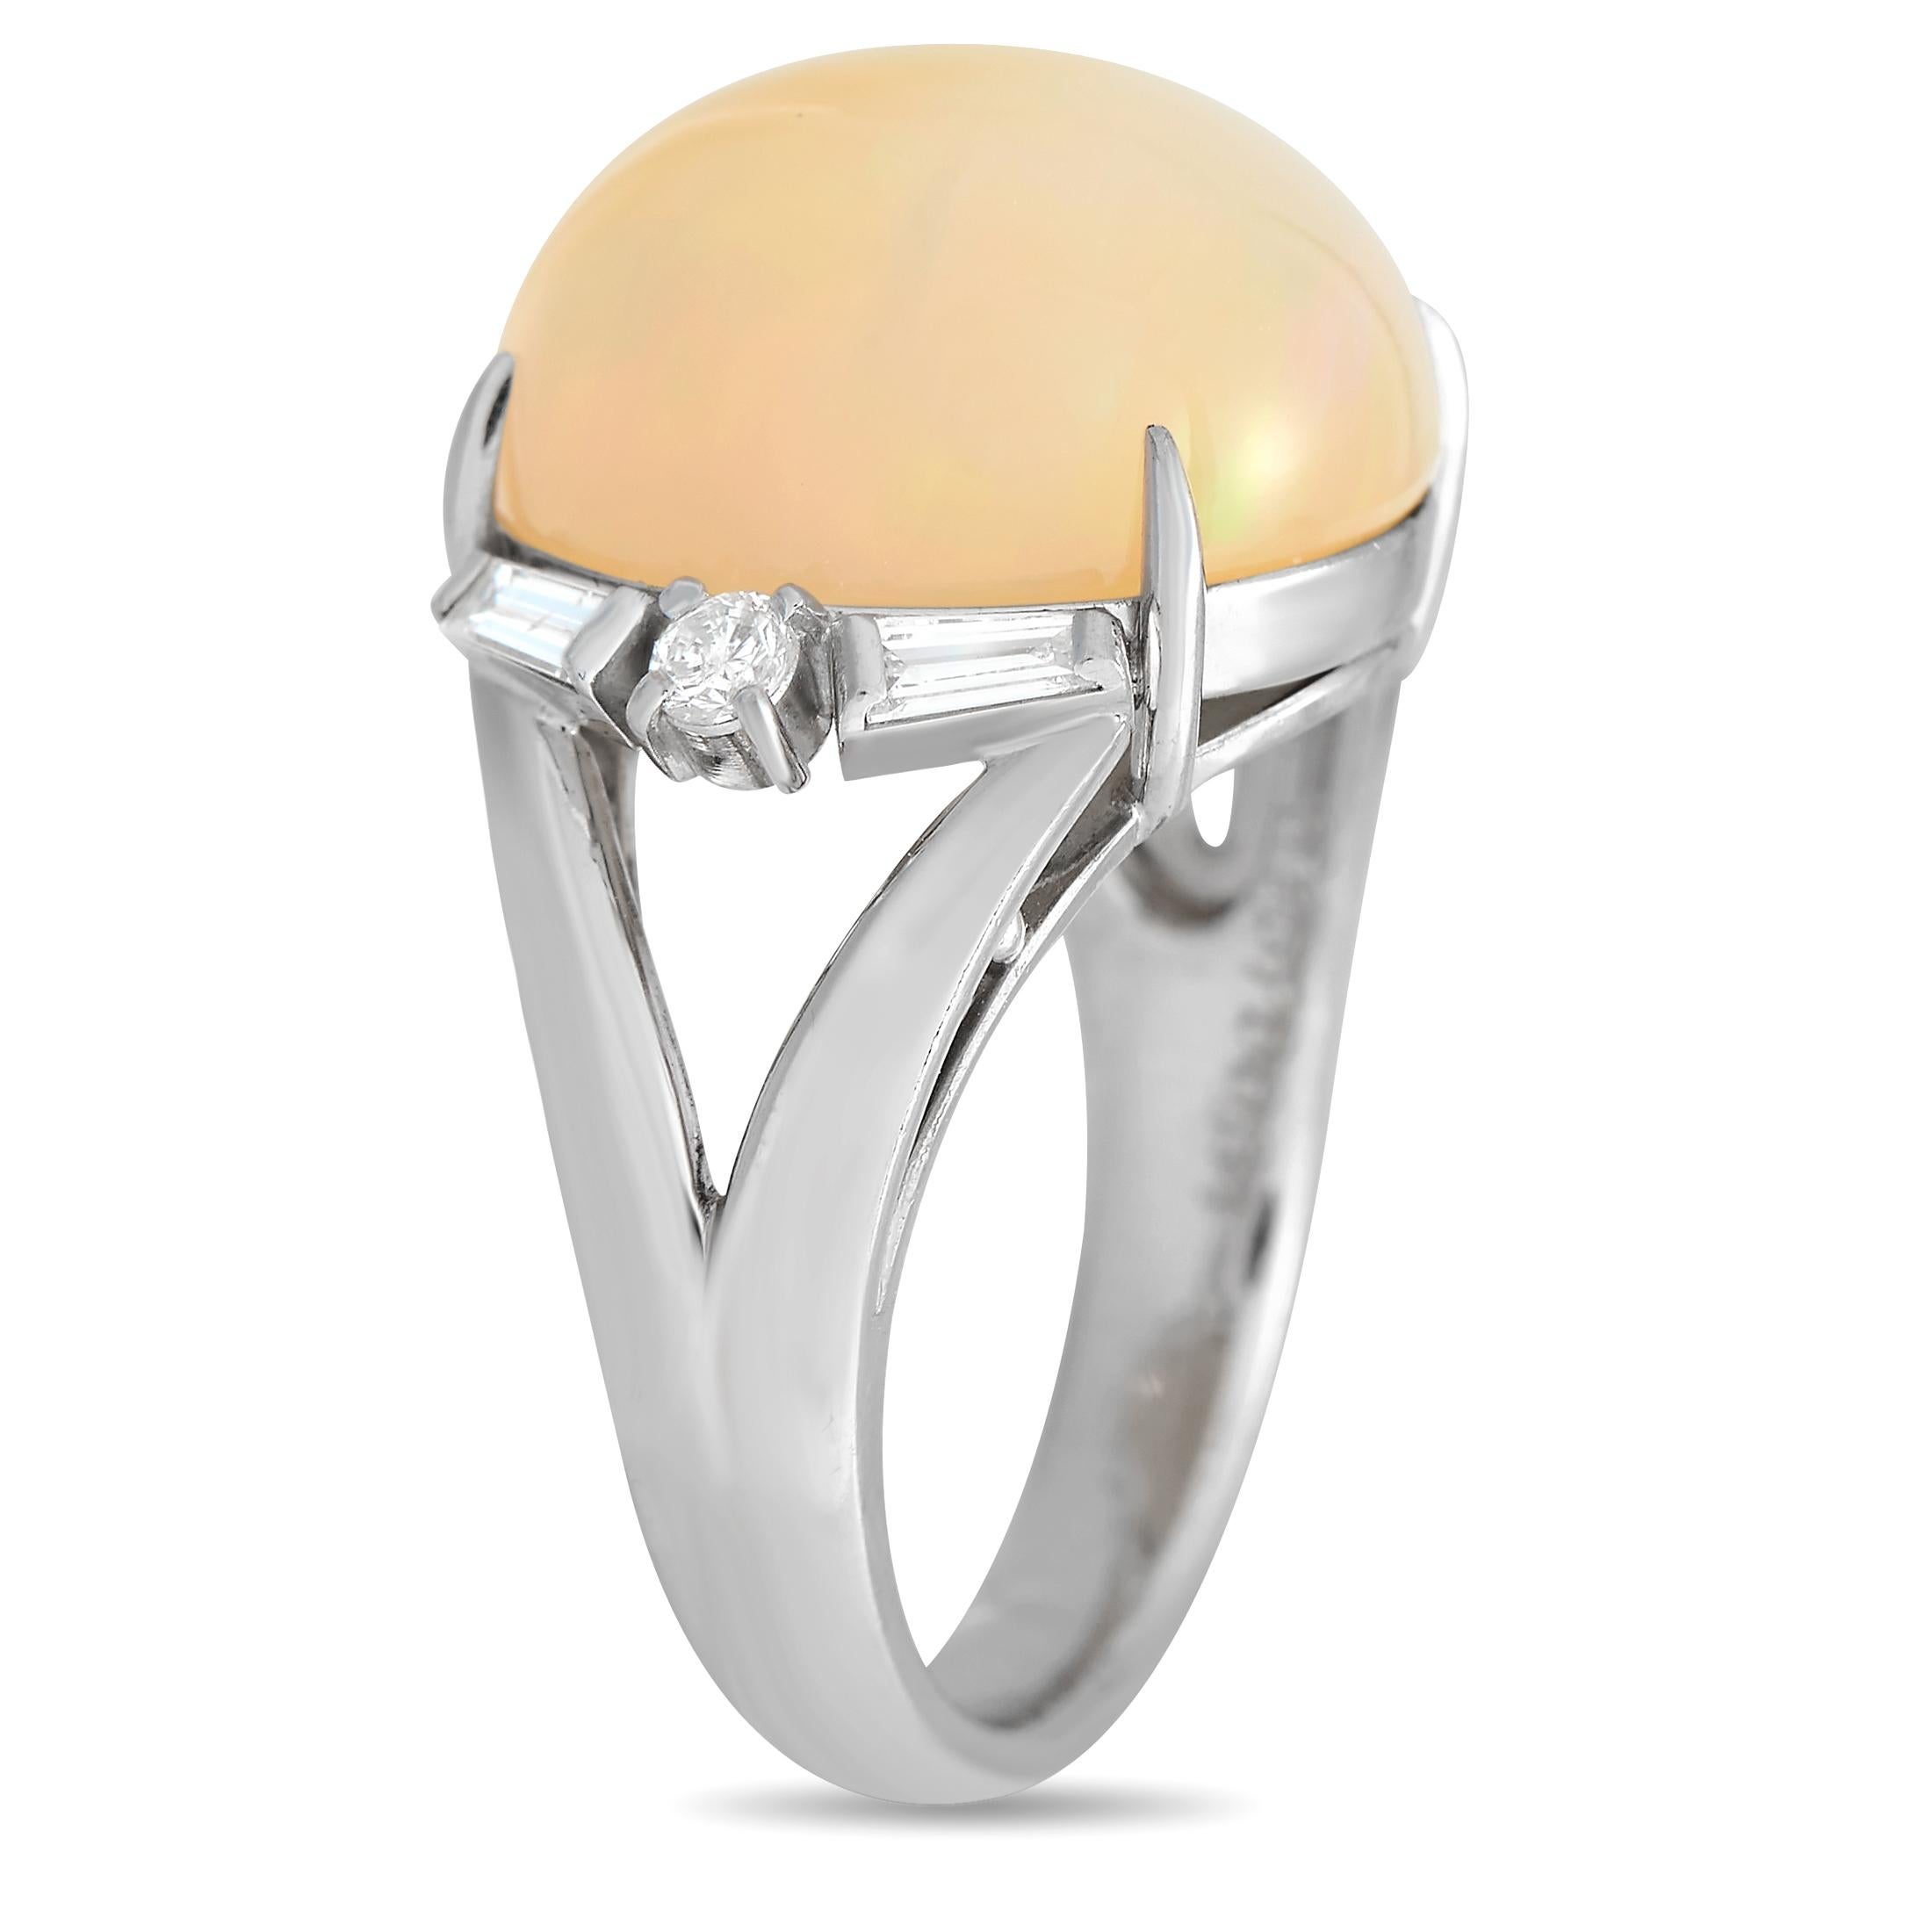 Ein kühner 9,87 Karat Opal mit einem atemberaubenden Pfirsichton steht im Mittelpunkt dieses Rings in einer schlichten Platinfassung. Das Schmuckstück ist mit Diamanten von insgesamt 0,34 Karat besetzt, hat ein 4 mm breites Band und eine Höhe von 10